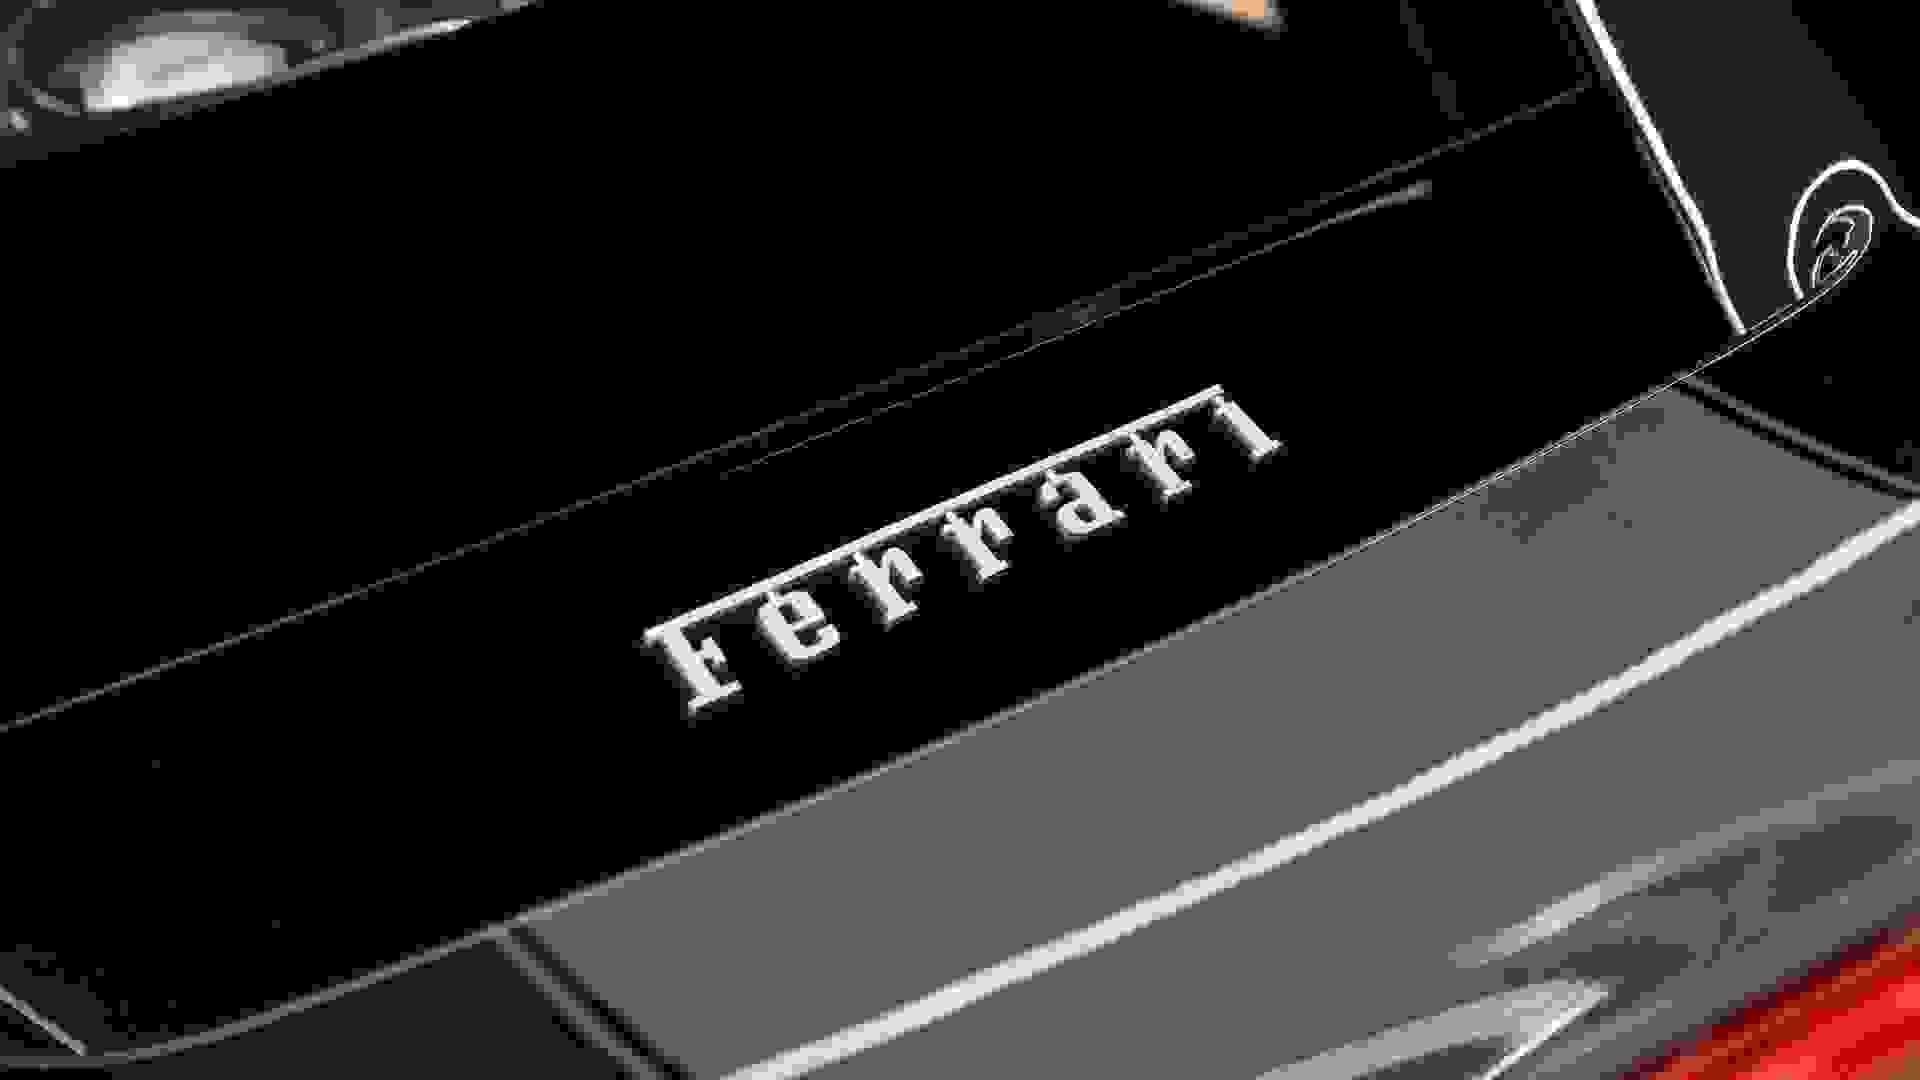 Ferrari 488 PISTA Photo b10cd946-65b3-48b2-a2b7-779ed357027f.jpg